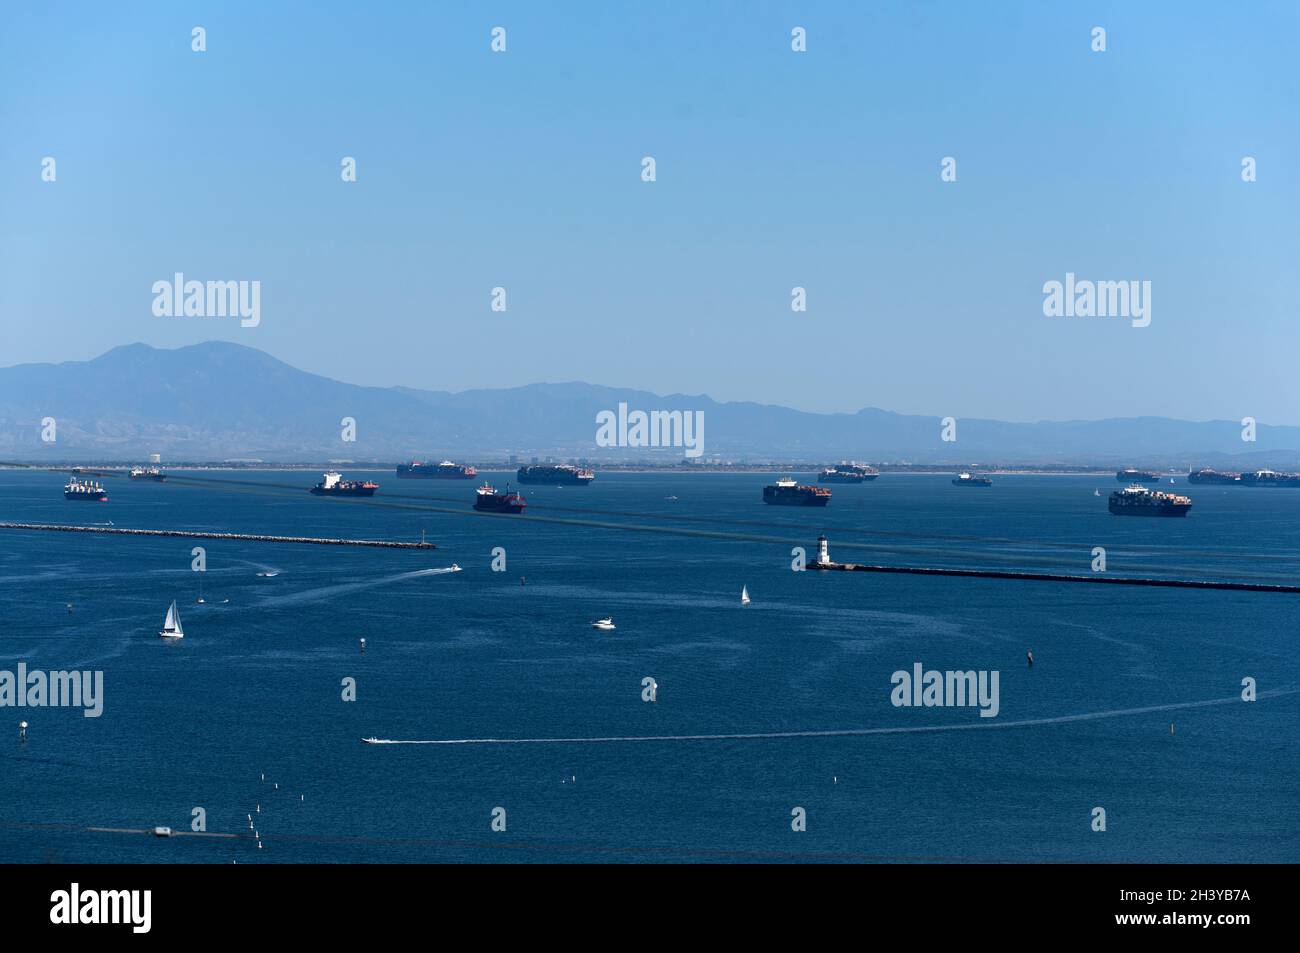 Barche a vela nel porto con navi da carico e container in attesa di entrare nel porto di Los Angeles durante il backlog della catena di approvvigionamento Foto Stock